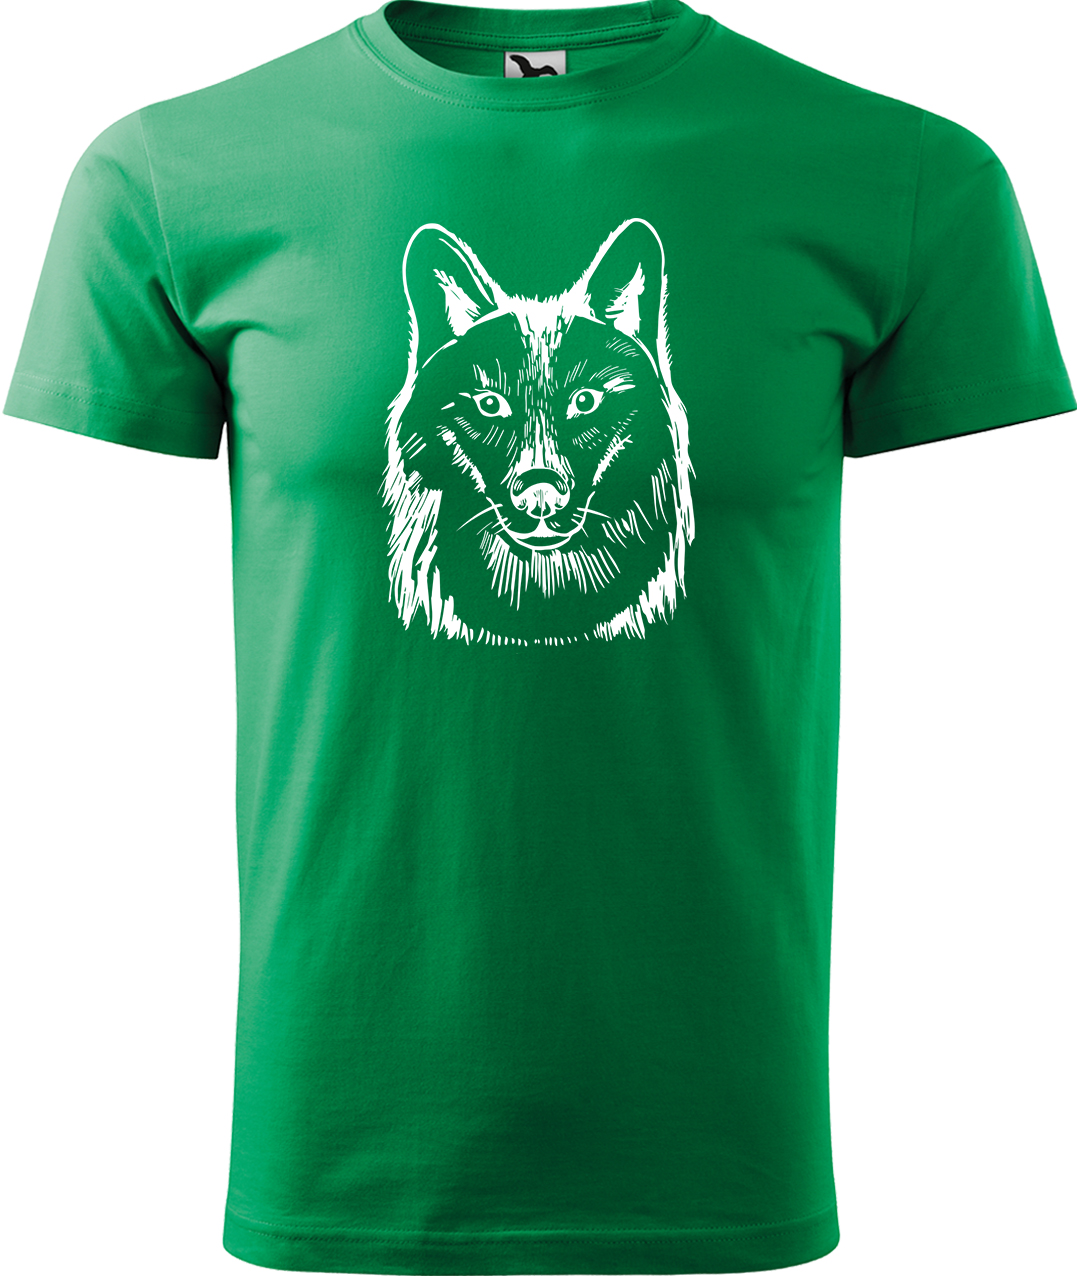 Pánské tričko s vlkem - Kresba vlka Velikost: 3XL, Barva: Středně zelená (16), Střih: pánský